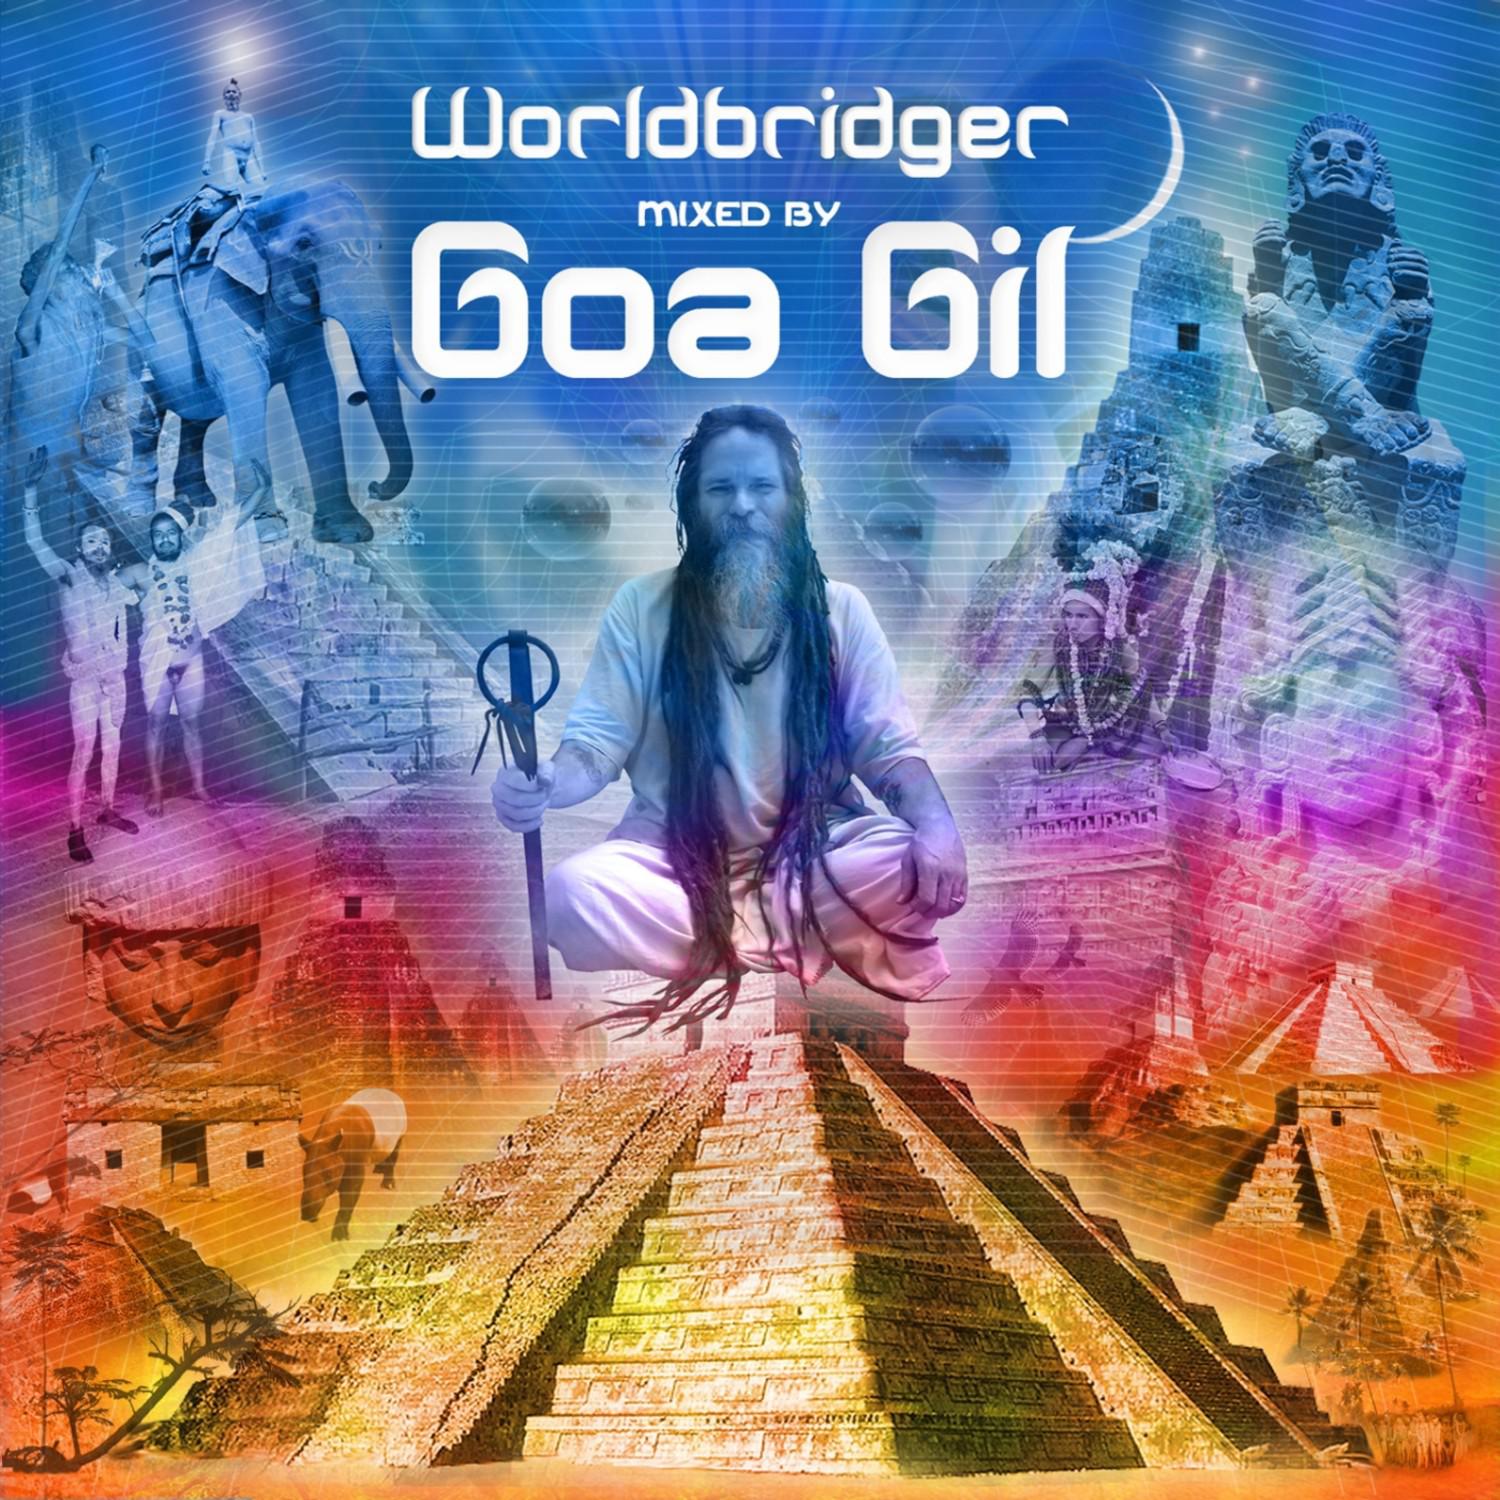 Goa Gil / Worldbridger